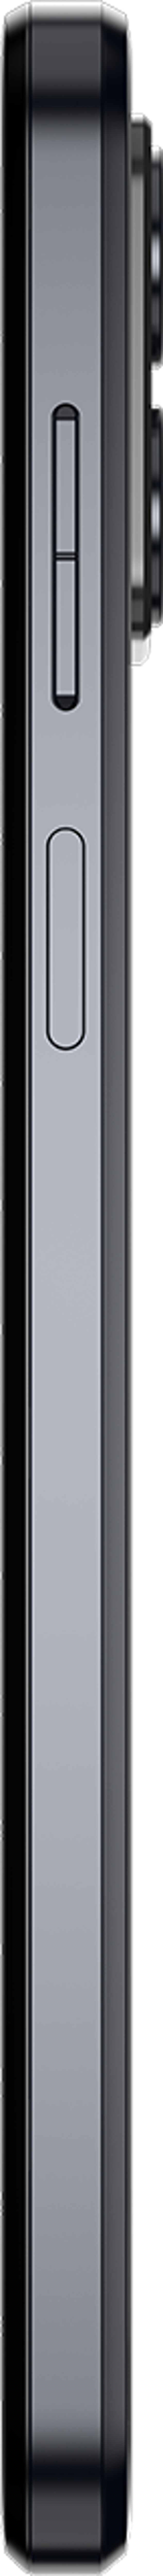 Motorola Moto G23 128GB Musta